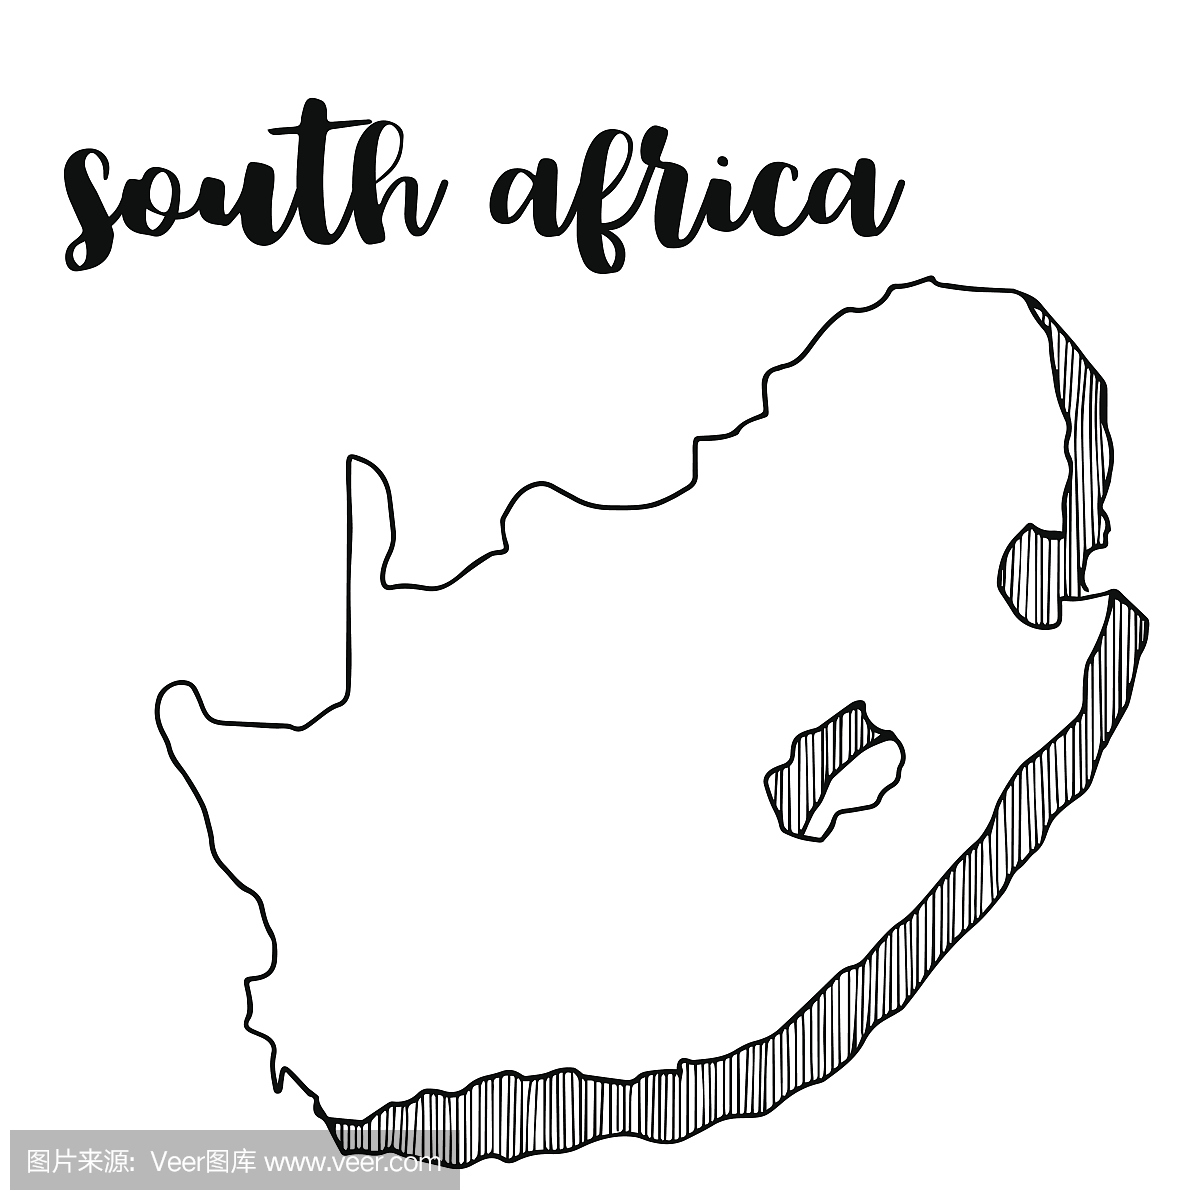 手绘的南非地图,矢量图